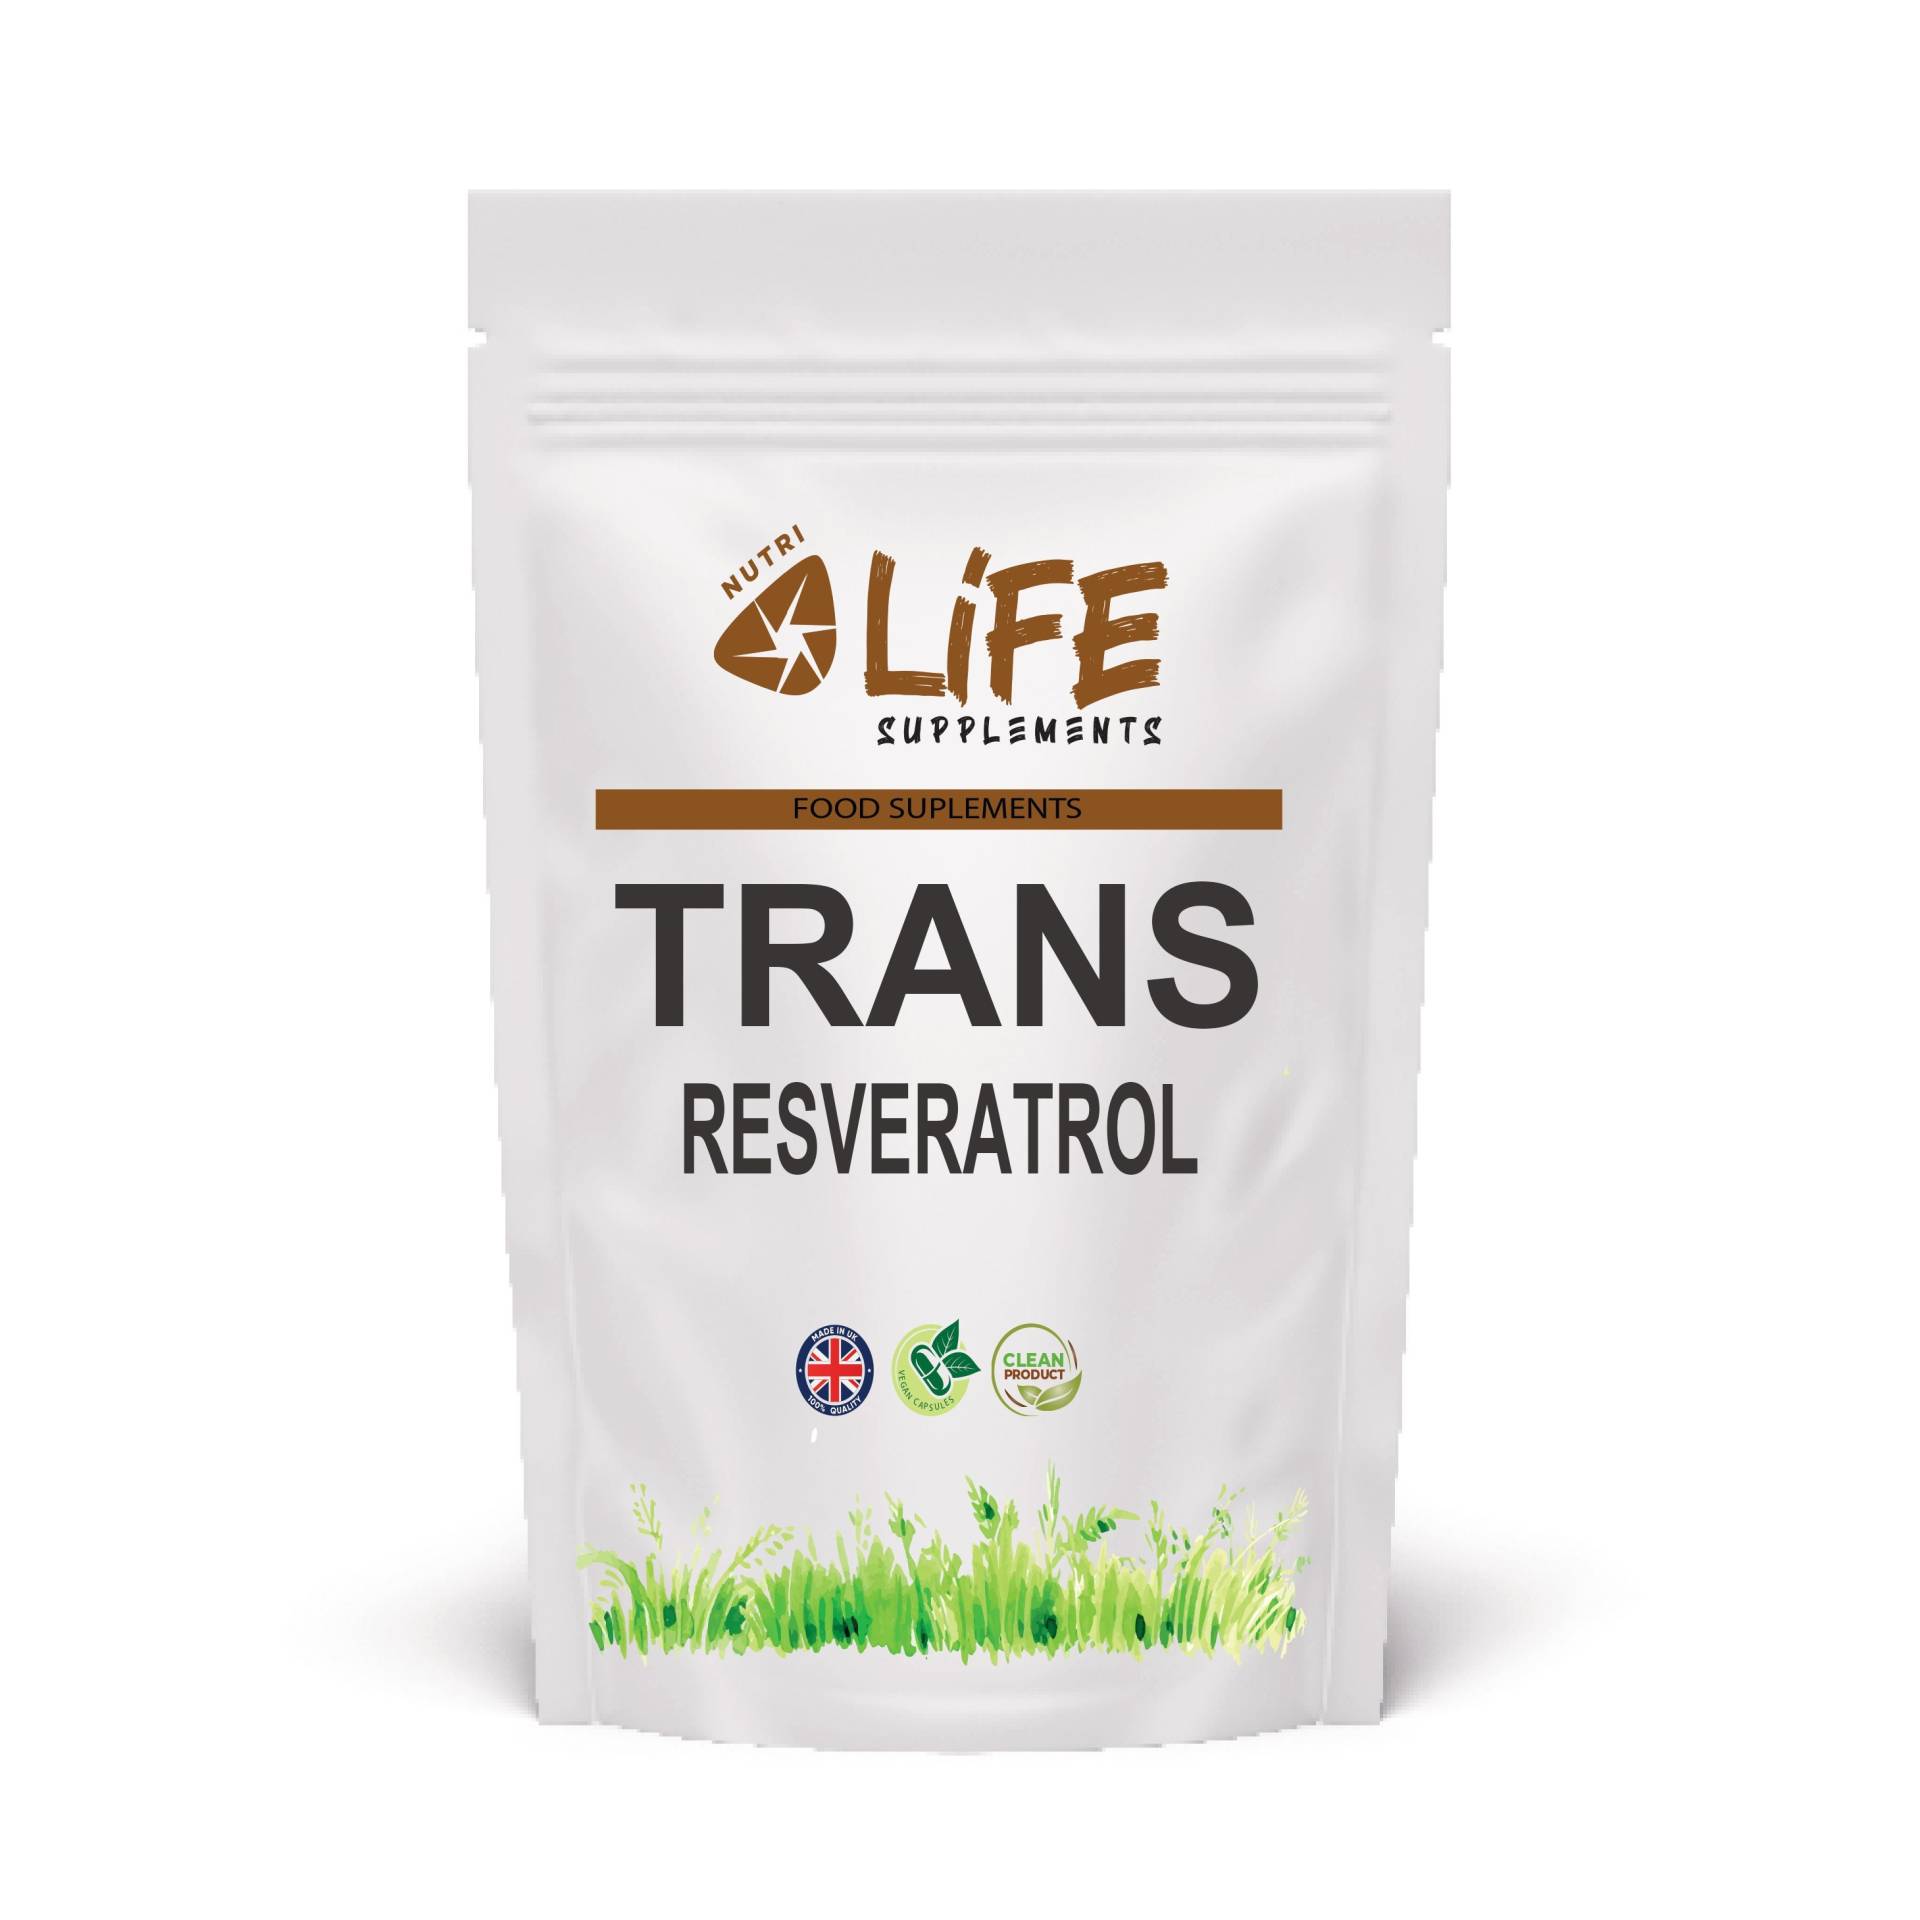 Trans Resveratrol 450 Mg Vegane Kapseln - 100 % Natürliches, Hoch Absorbierbares Antioxidans-Ergänzungsmittel von NutriLifeSupplements